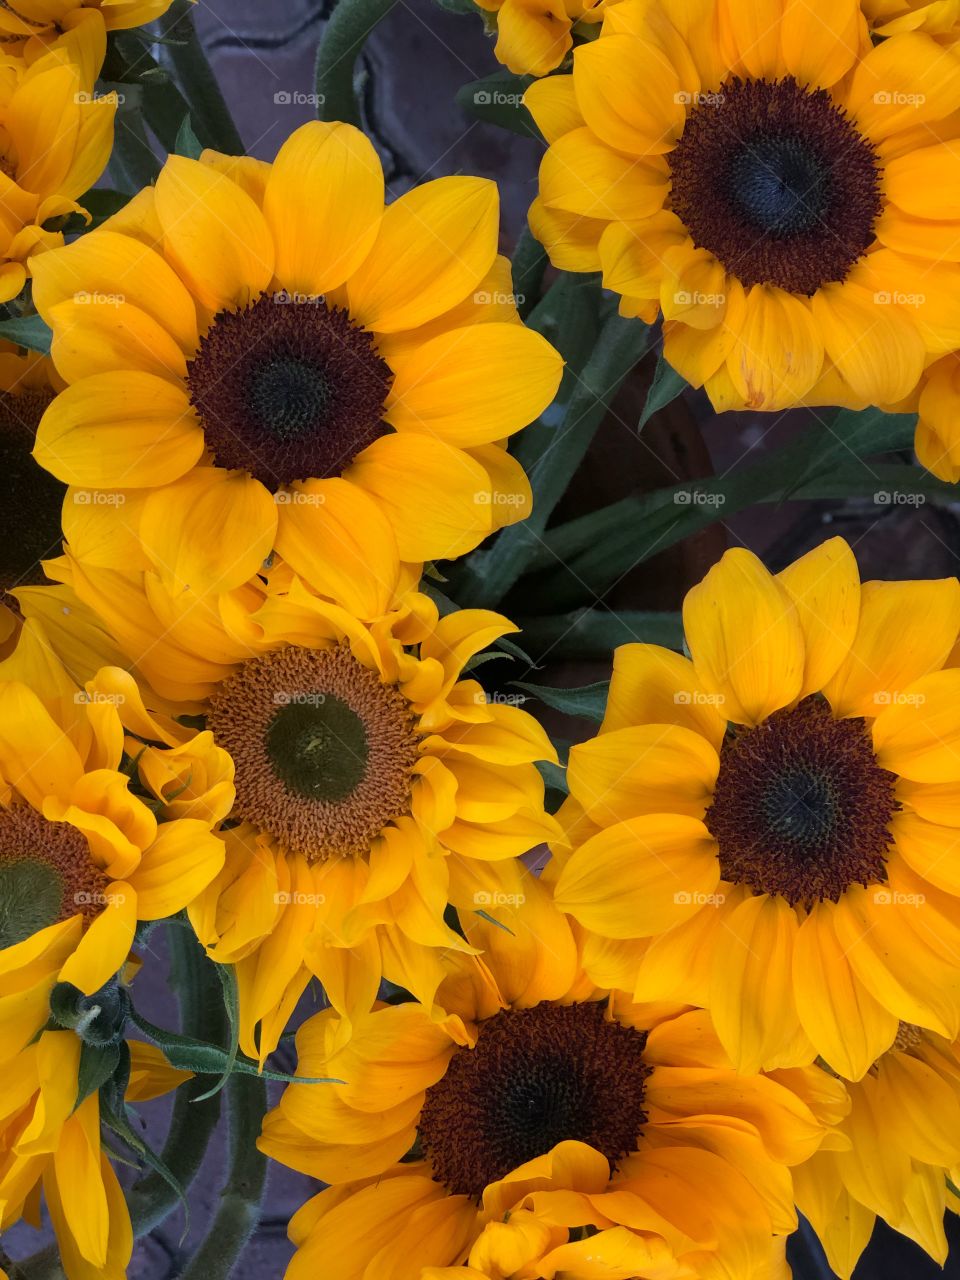 sunflower portrait 